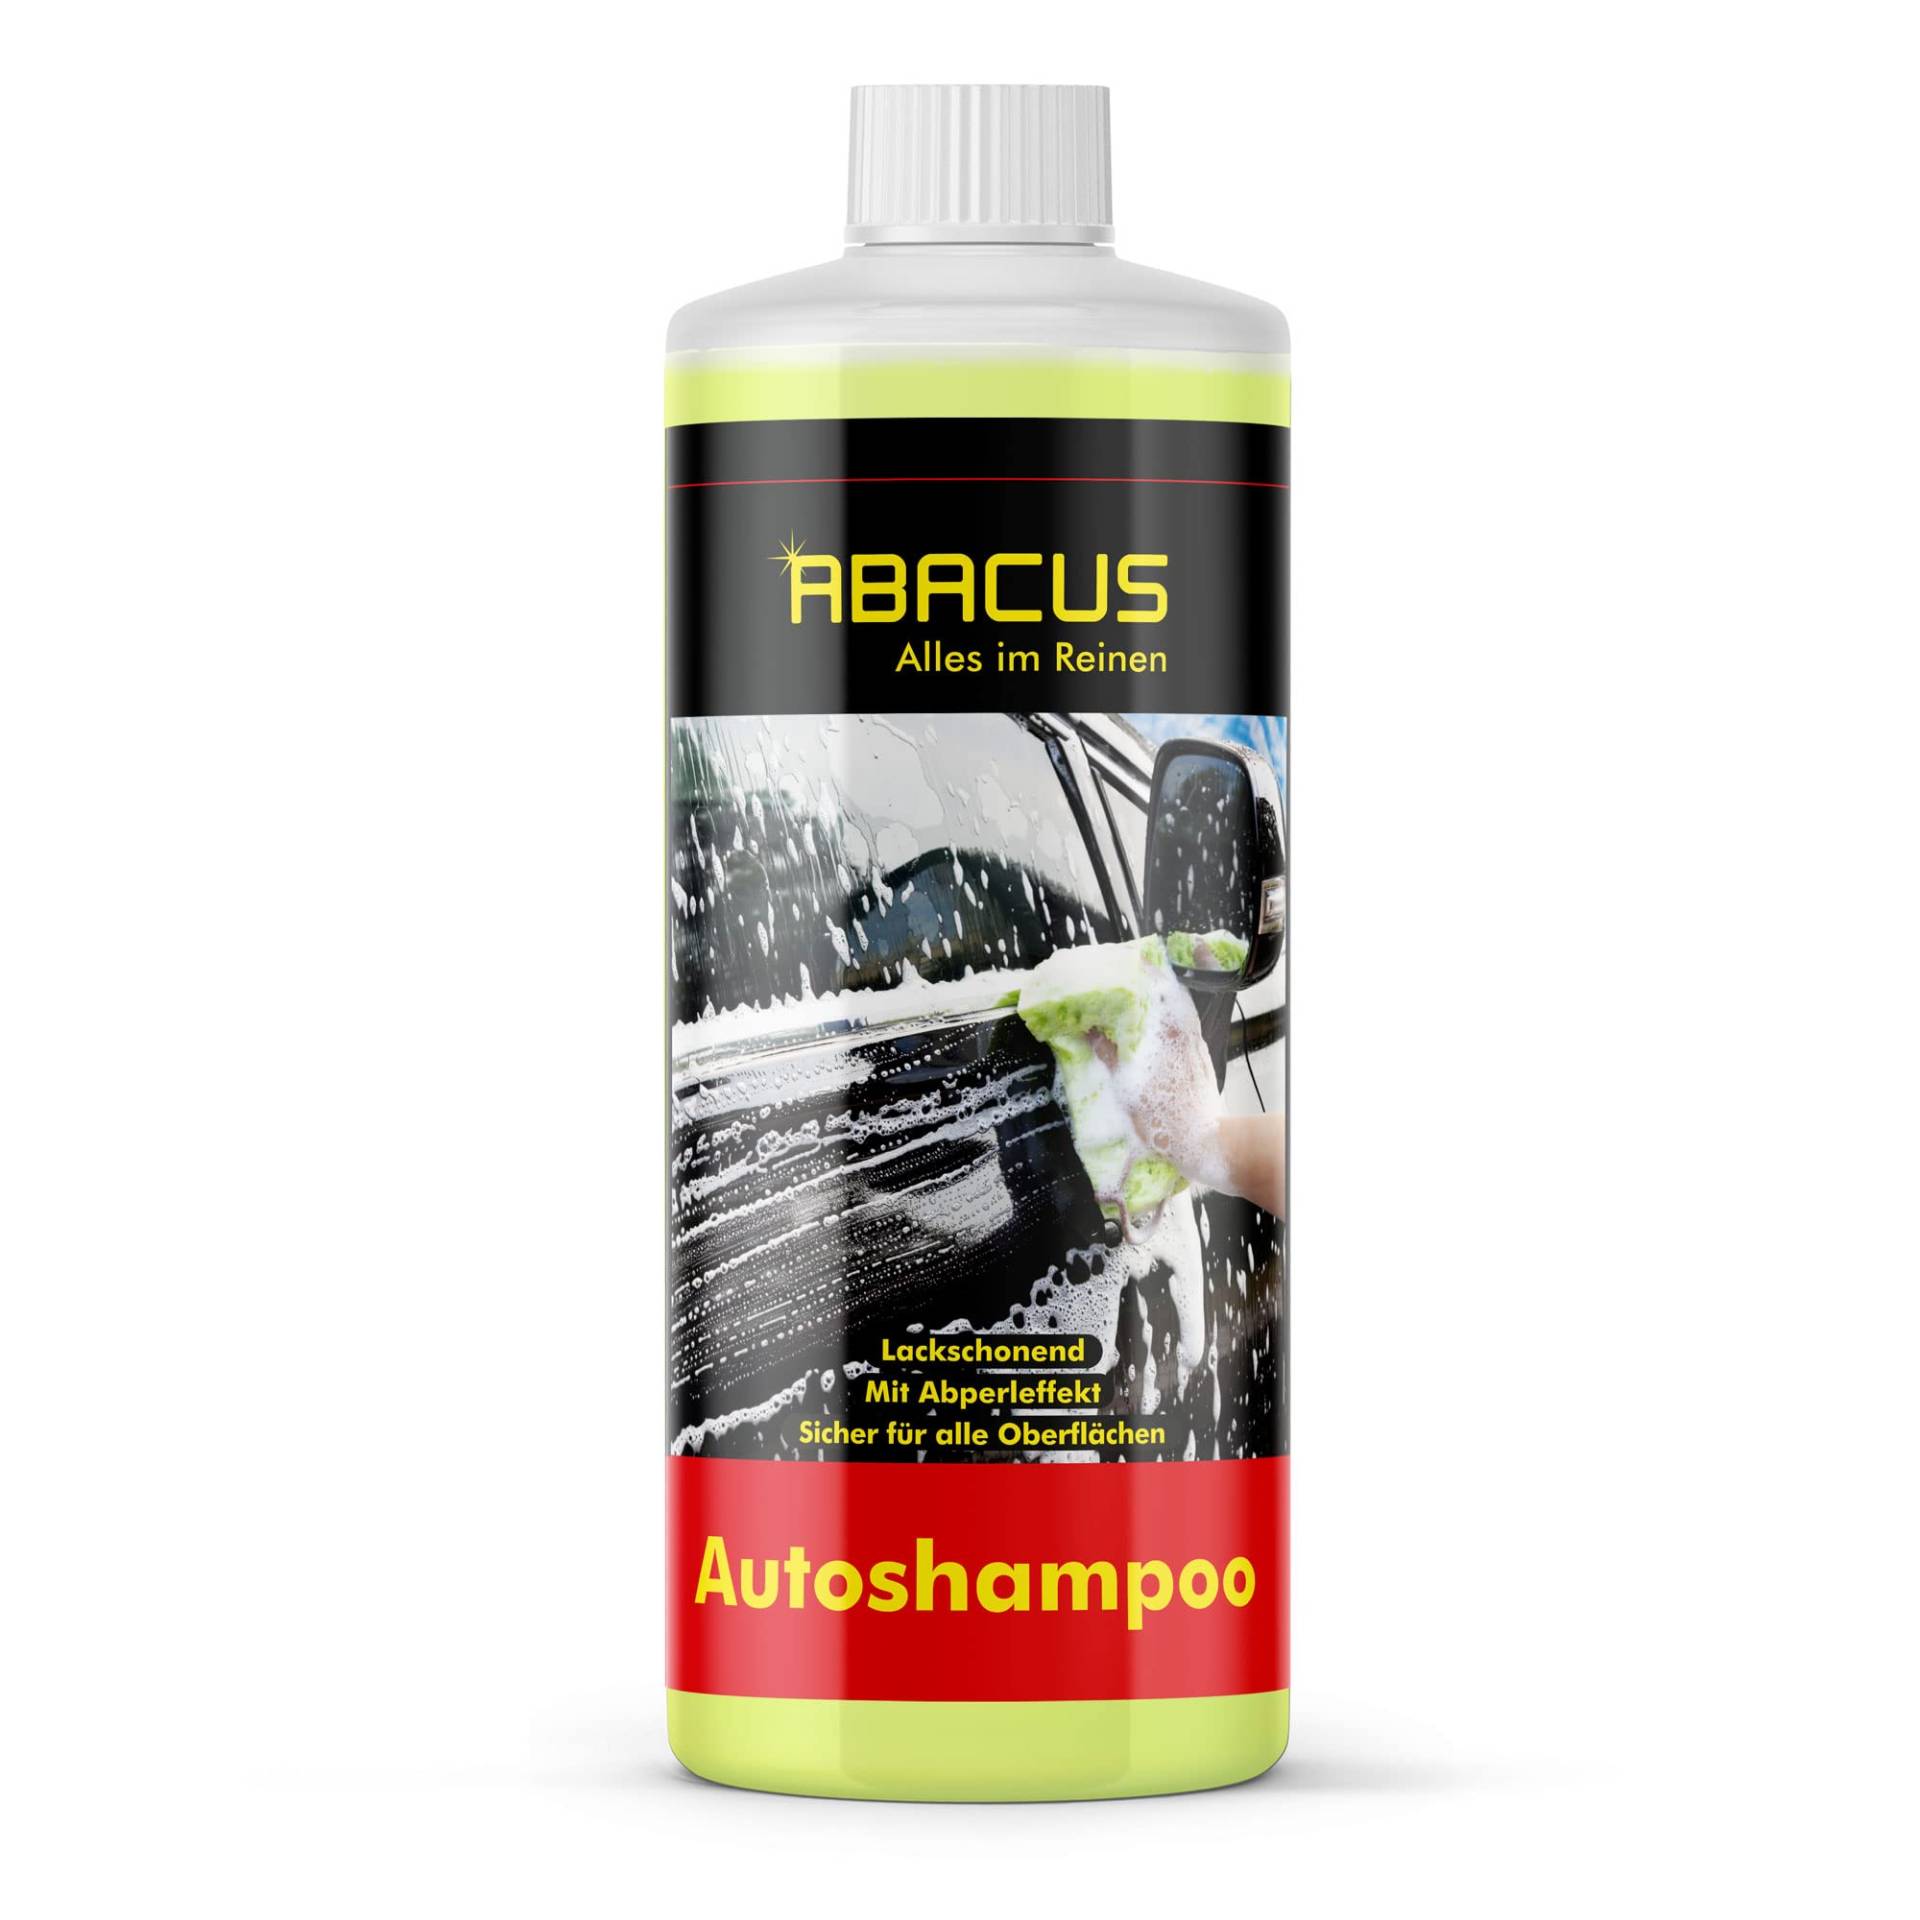 ABACUS® Autoshampoo Konzentrat mit Lotus-Effekt, extrem ergiebig 1:300, Autohandwäsche Abperleffekt, KFZ-Shampoo, Auto Handwäsche, Auto-Shampoo, Autoreinigungsmittel – Autoshampoo 1000 ml von ABACUS